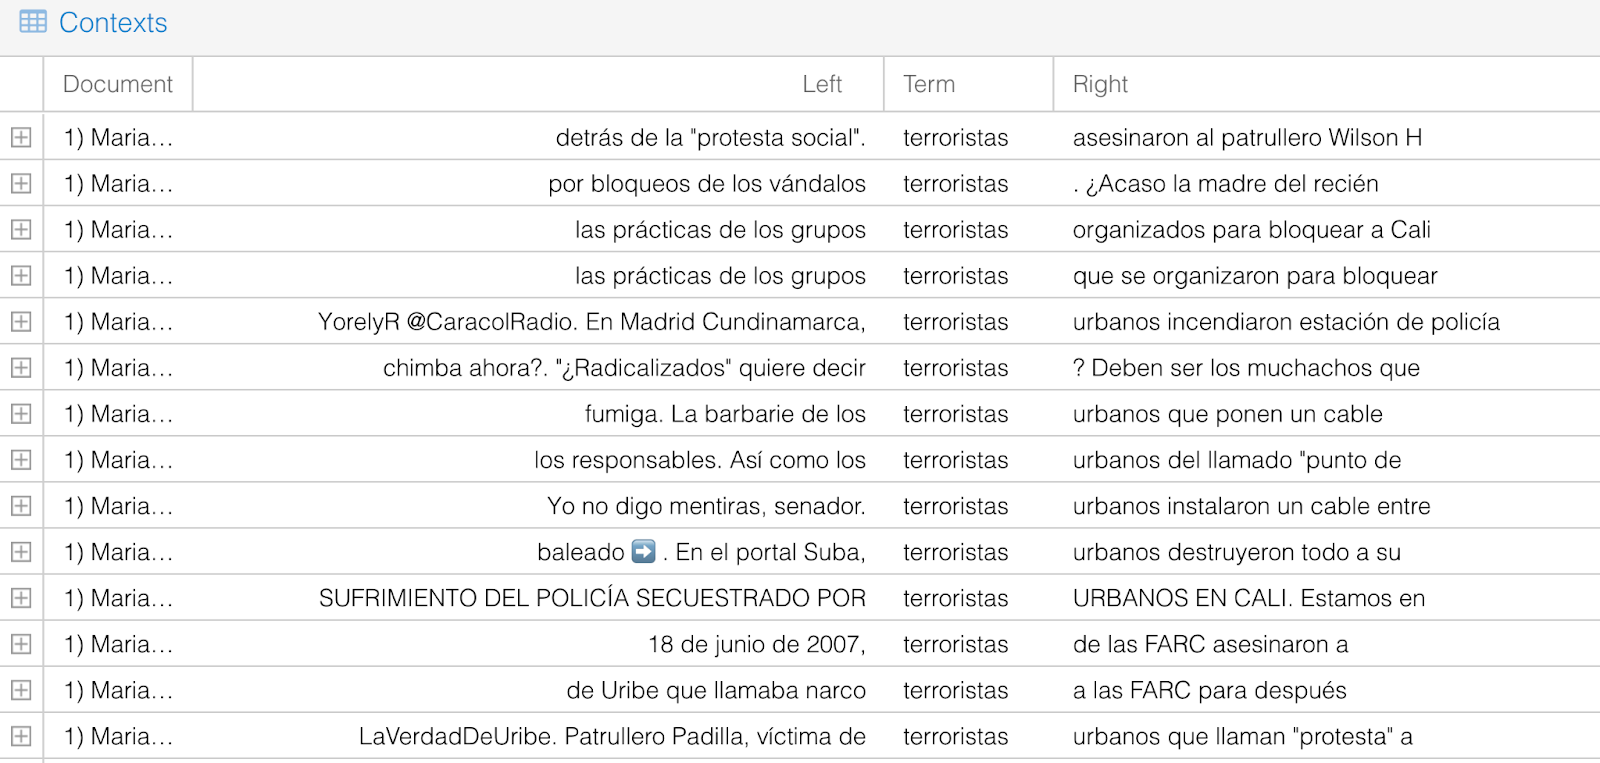 La relevancia de Google NLP para la detección del discurso de odio en los Tweets sobre el Paro nacional colombiano del 2021 por parte del Centro Democrático 60